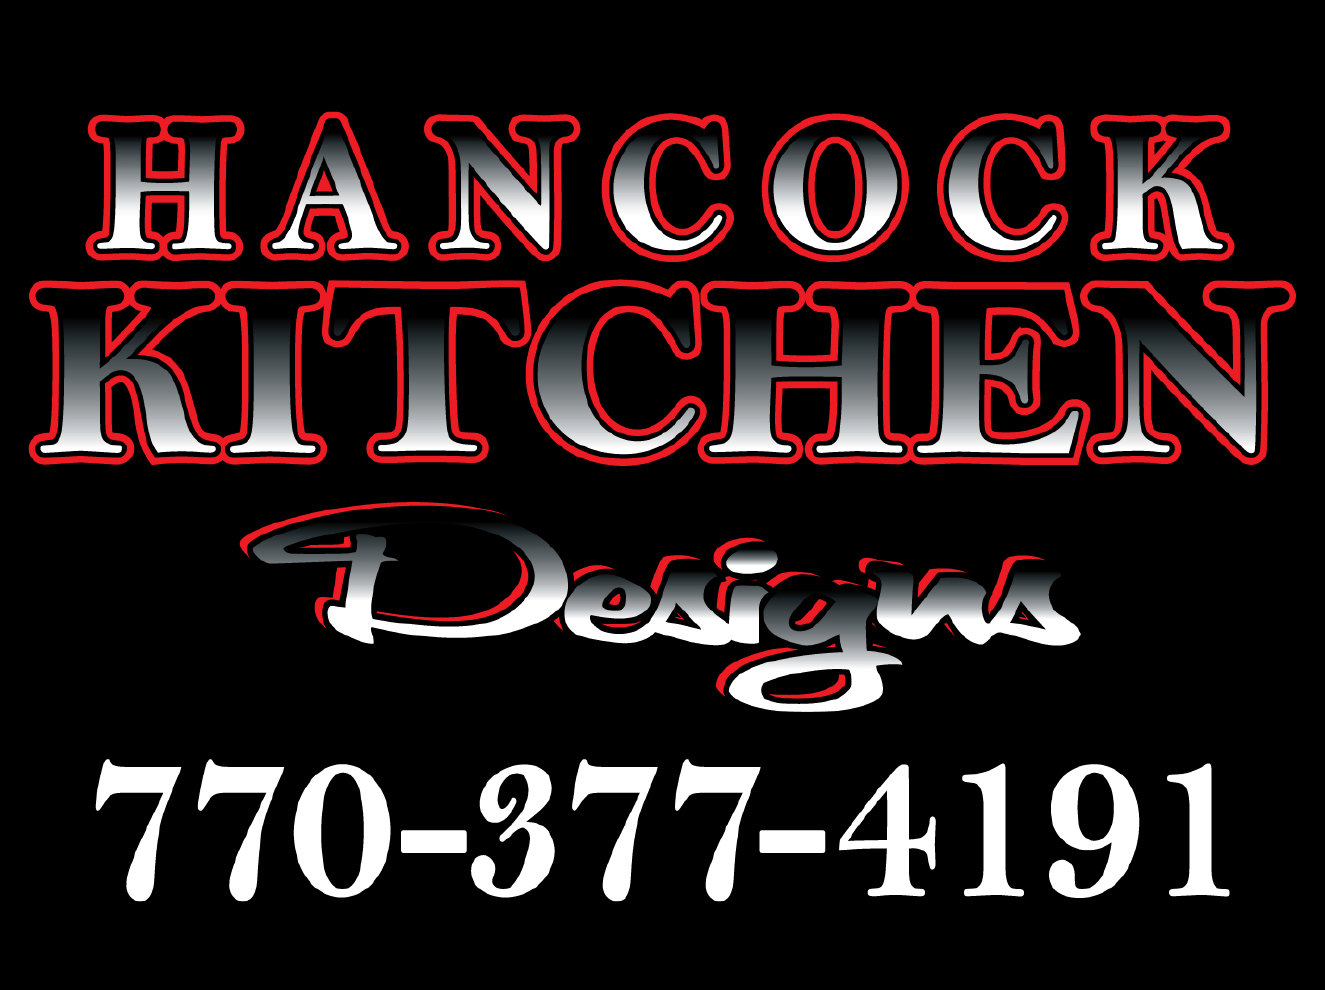 Hancock Kitchen Designs